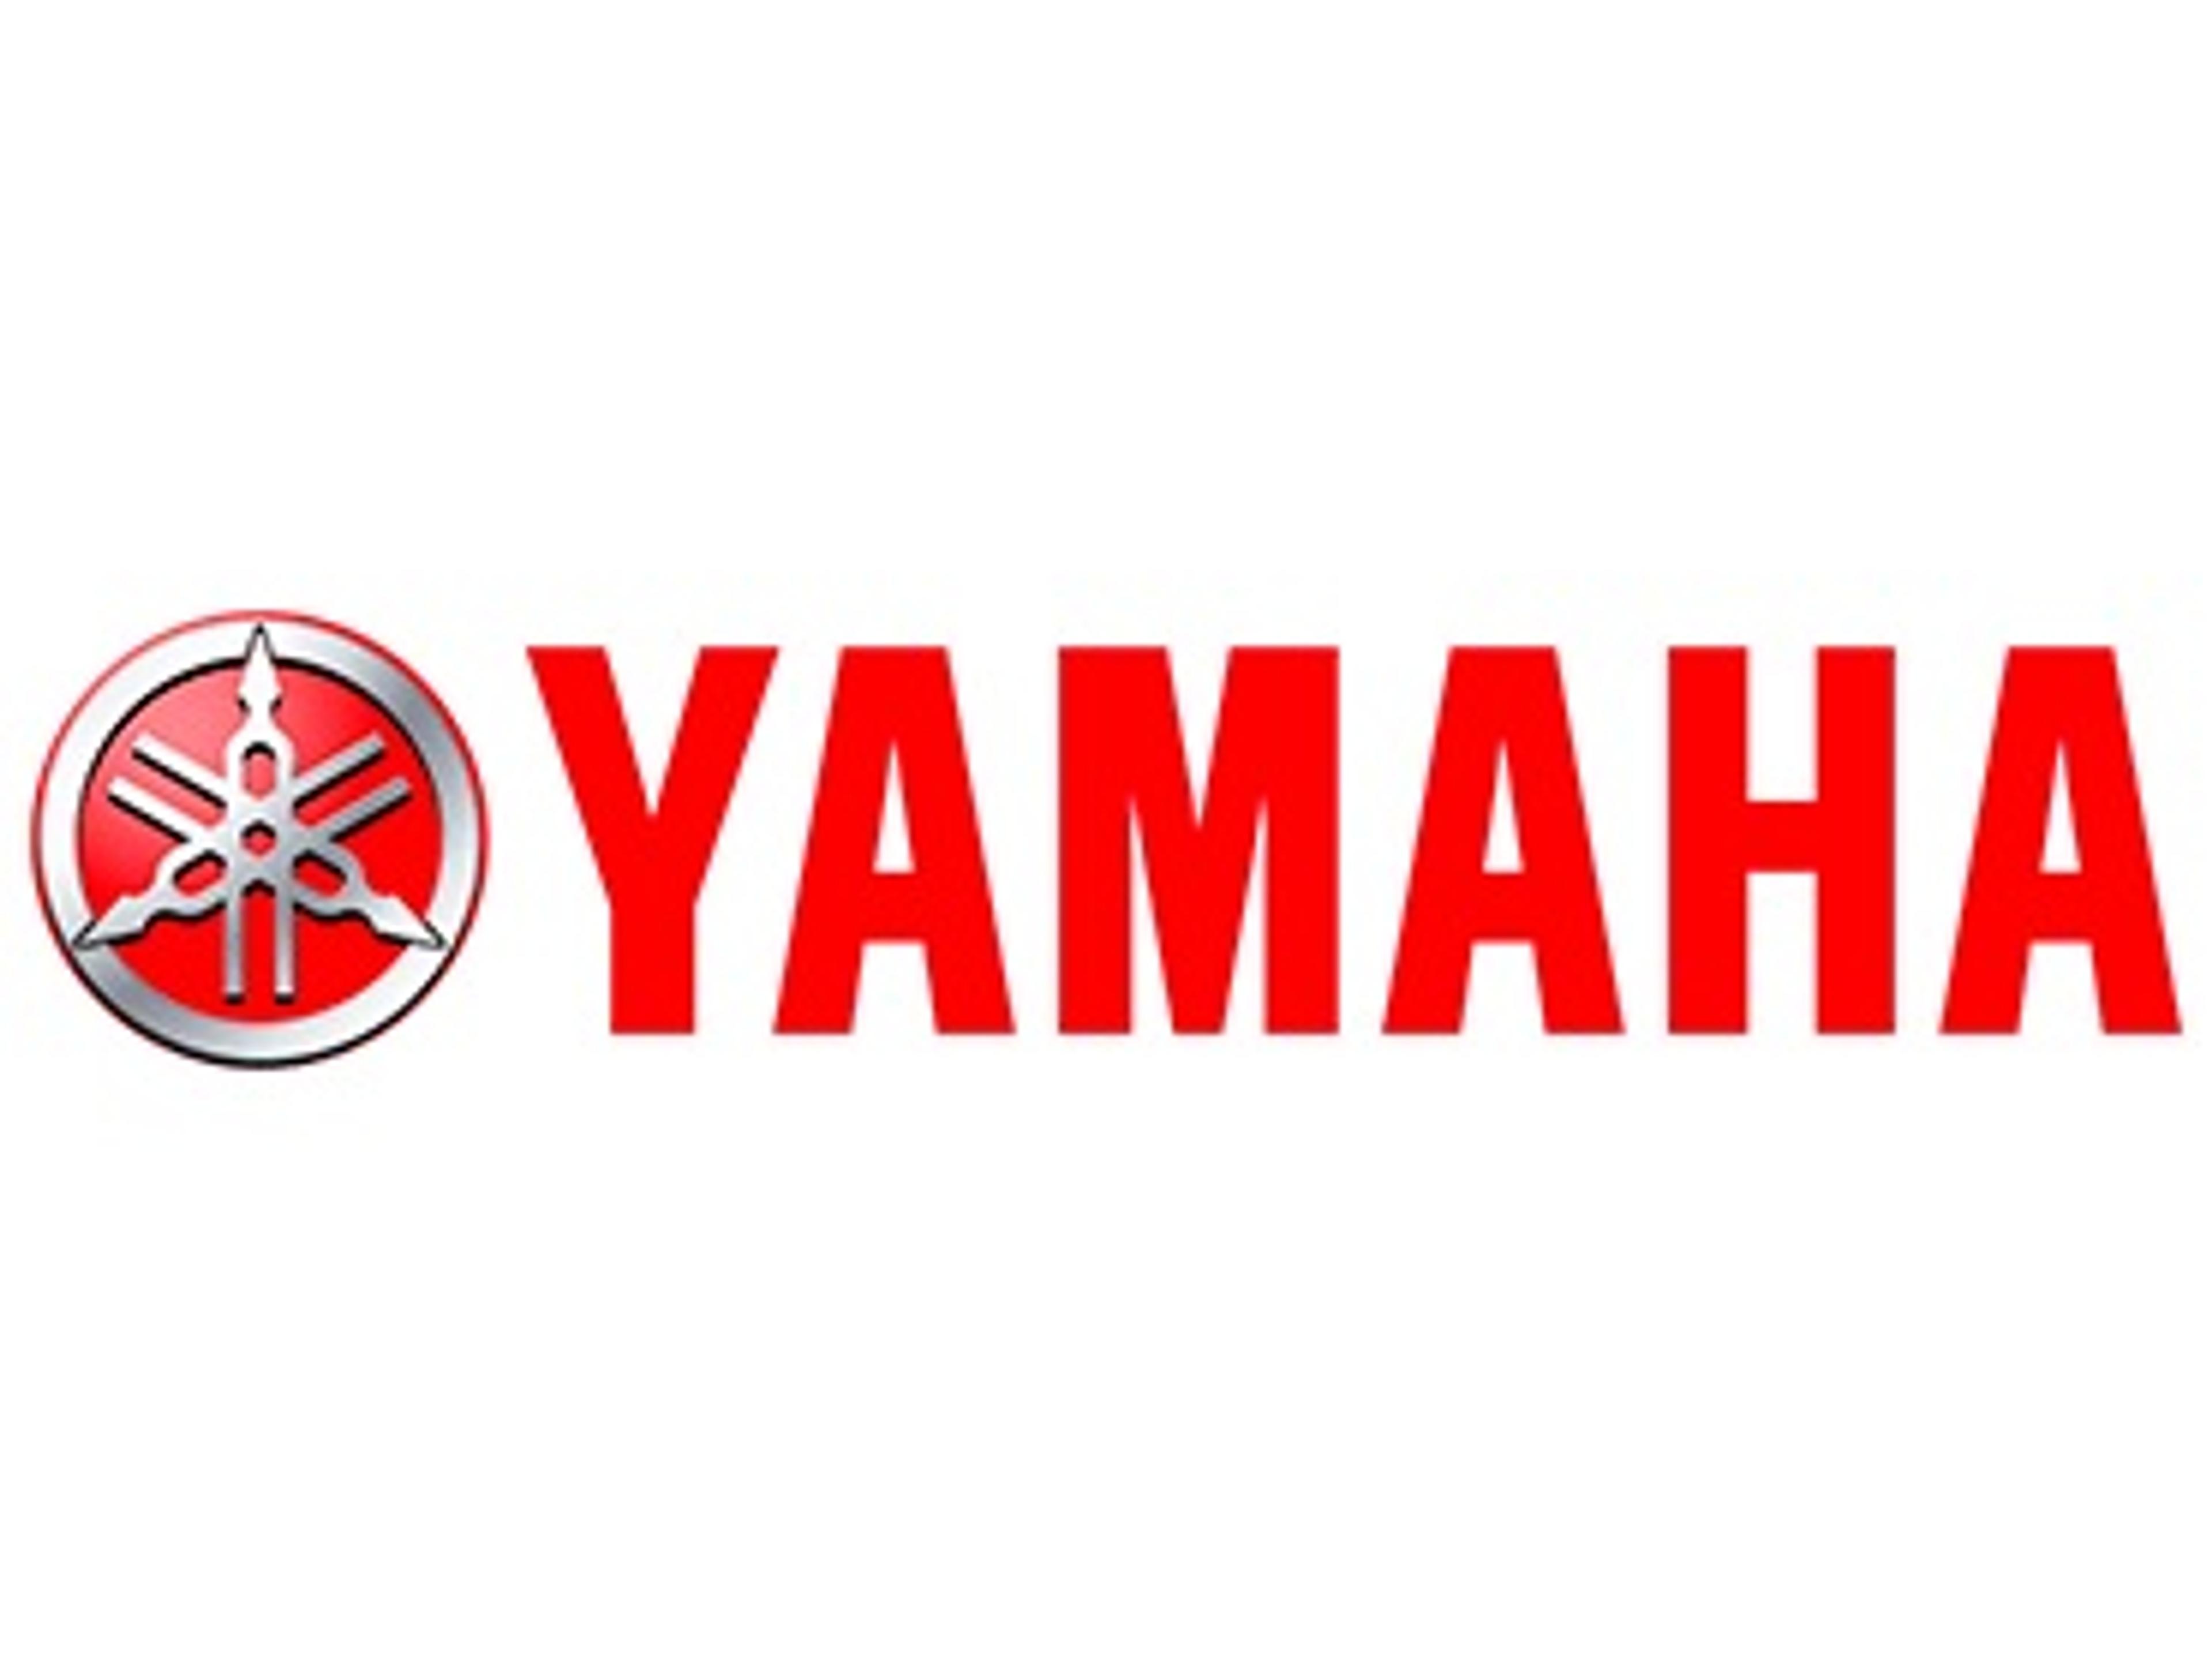 Köp din powertrim-motor till Yamaha hos oss!